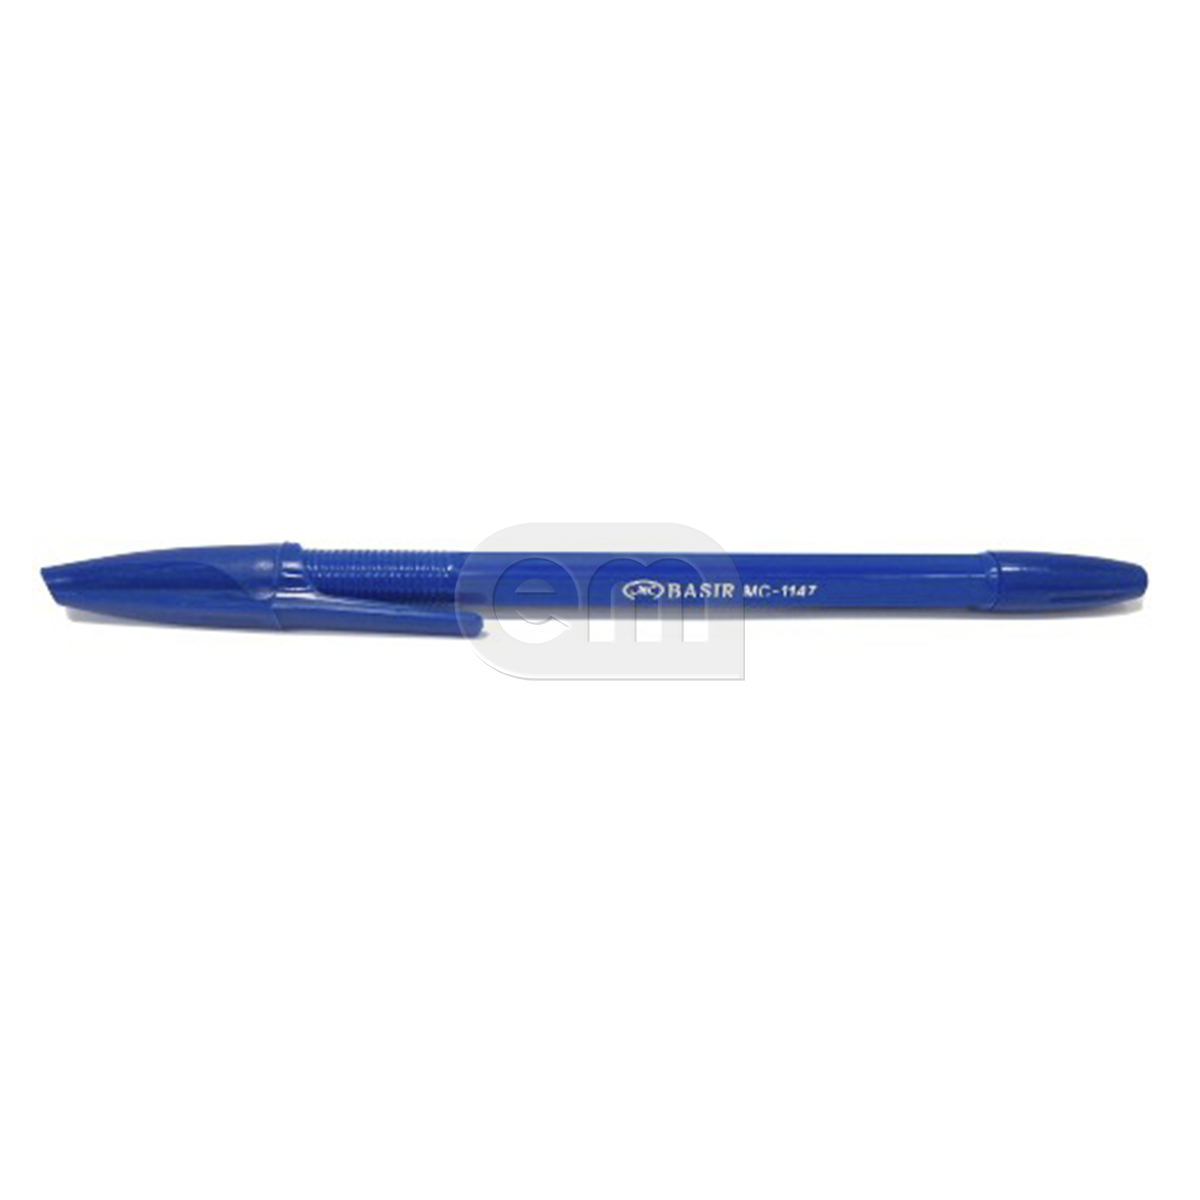 Ручка шариковая на масляной основе синяя (50)